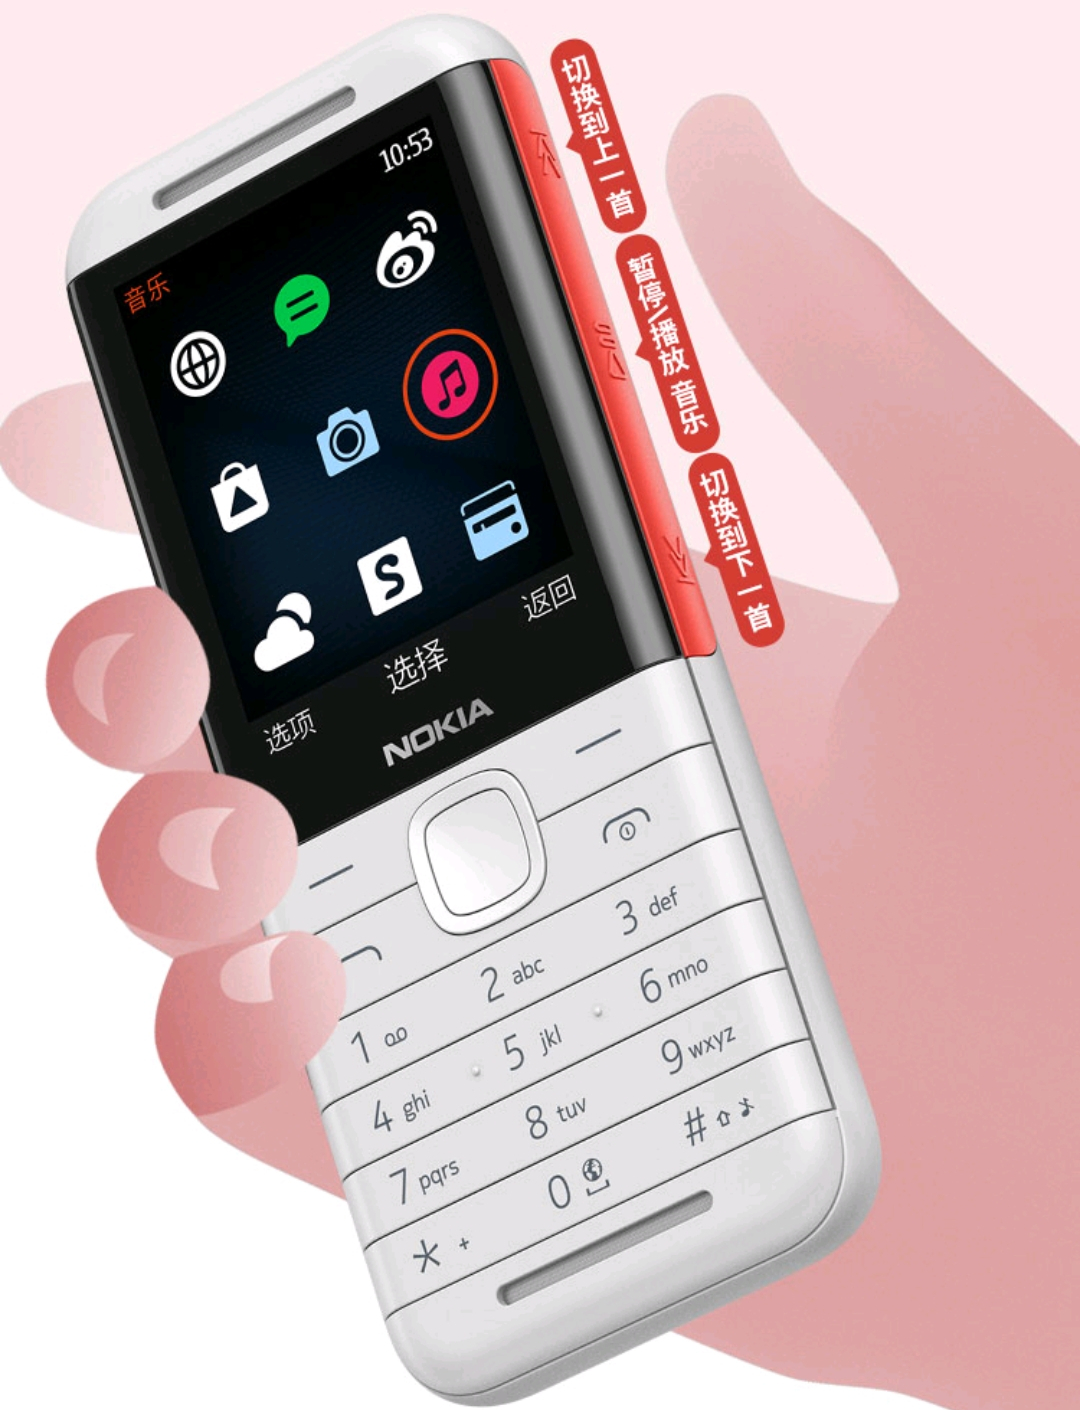 Nokia5310打开预定，单独5键设计方案，399元遗憾来的太晚